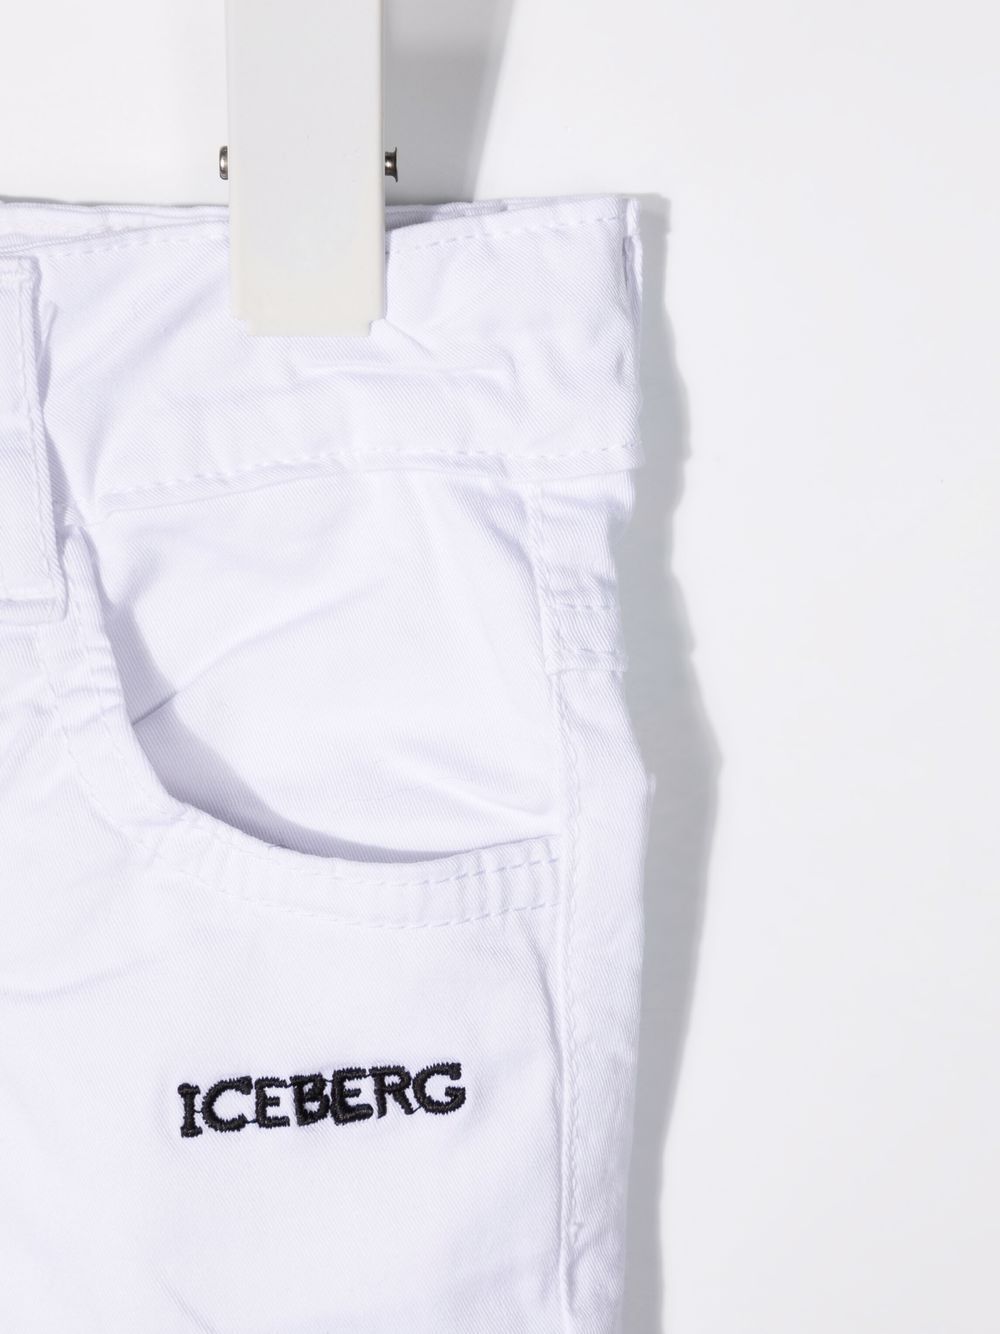 фото Iceberg kids джинсовые шорты с вышитым логотипом